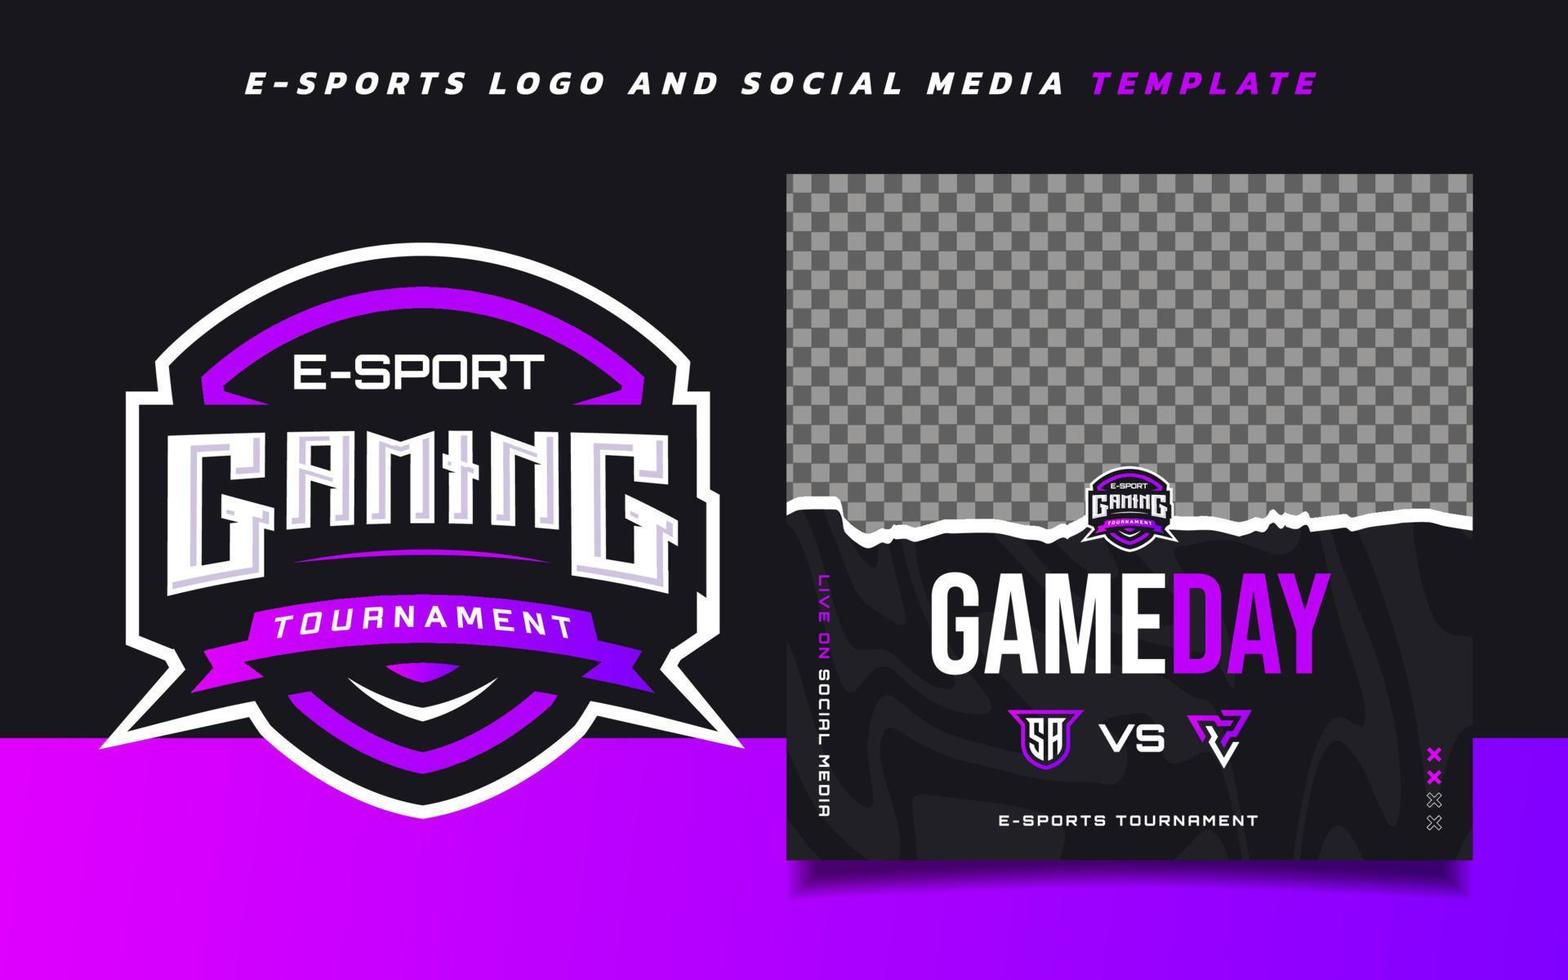 plantilla de banner de juegos de deportes electrónicos del día del juego para redes sociales con logotipo de torneo de juegos vector